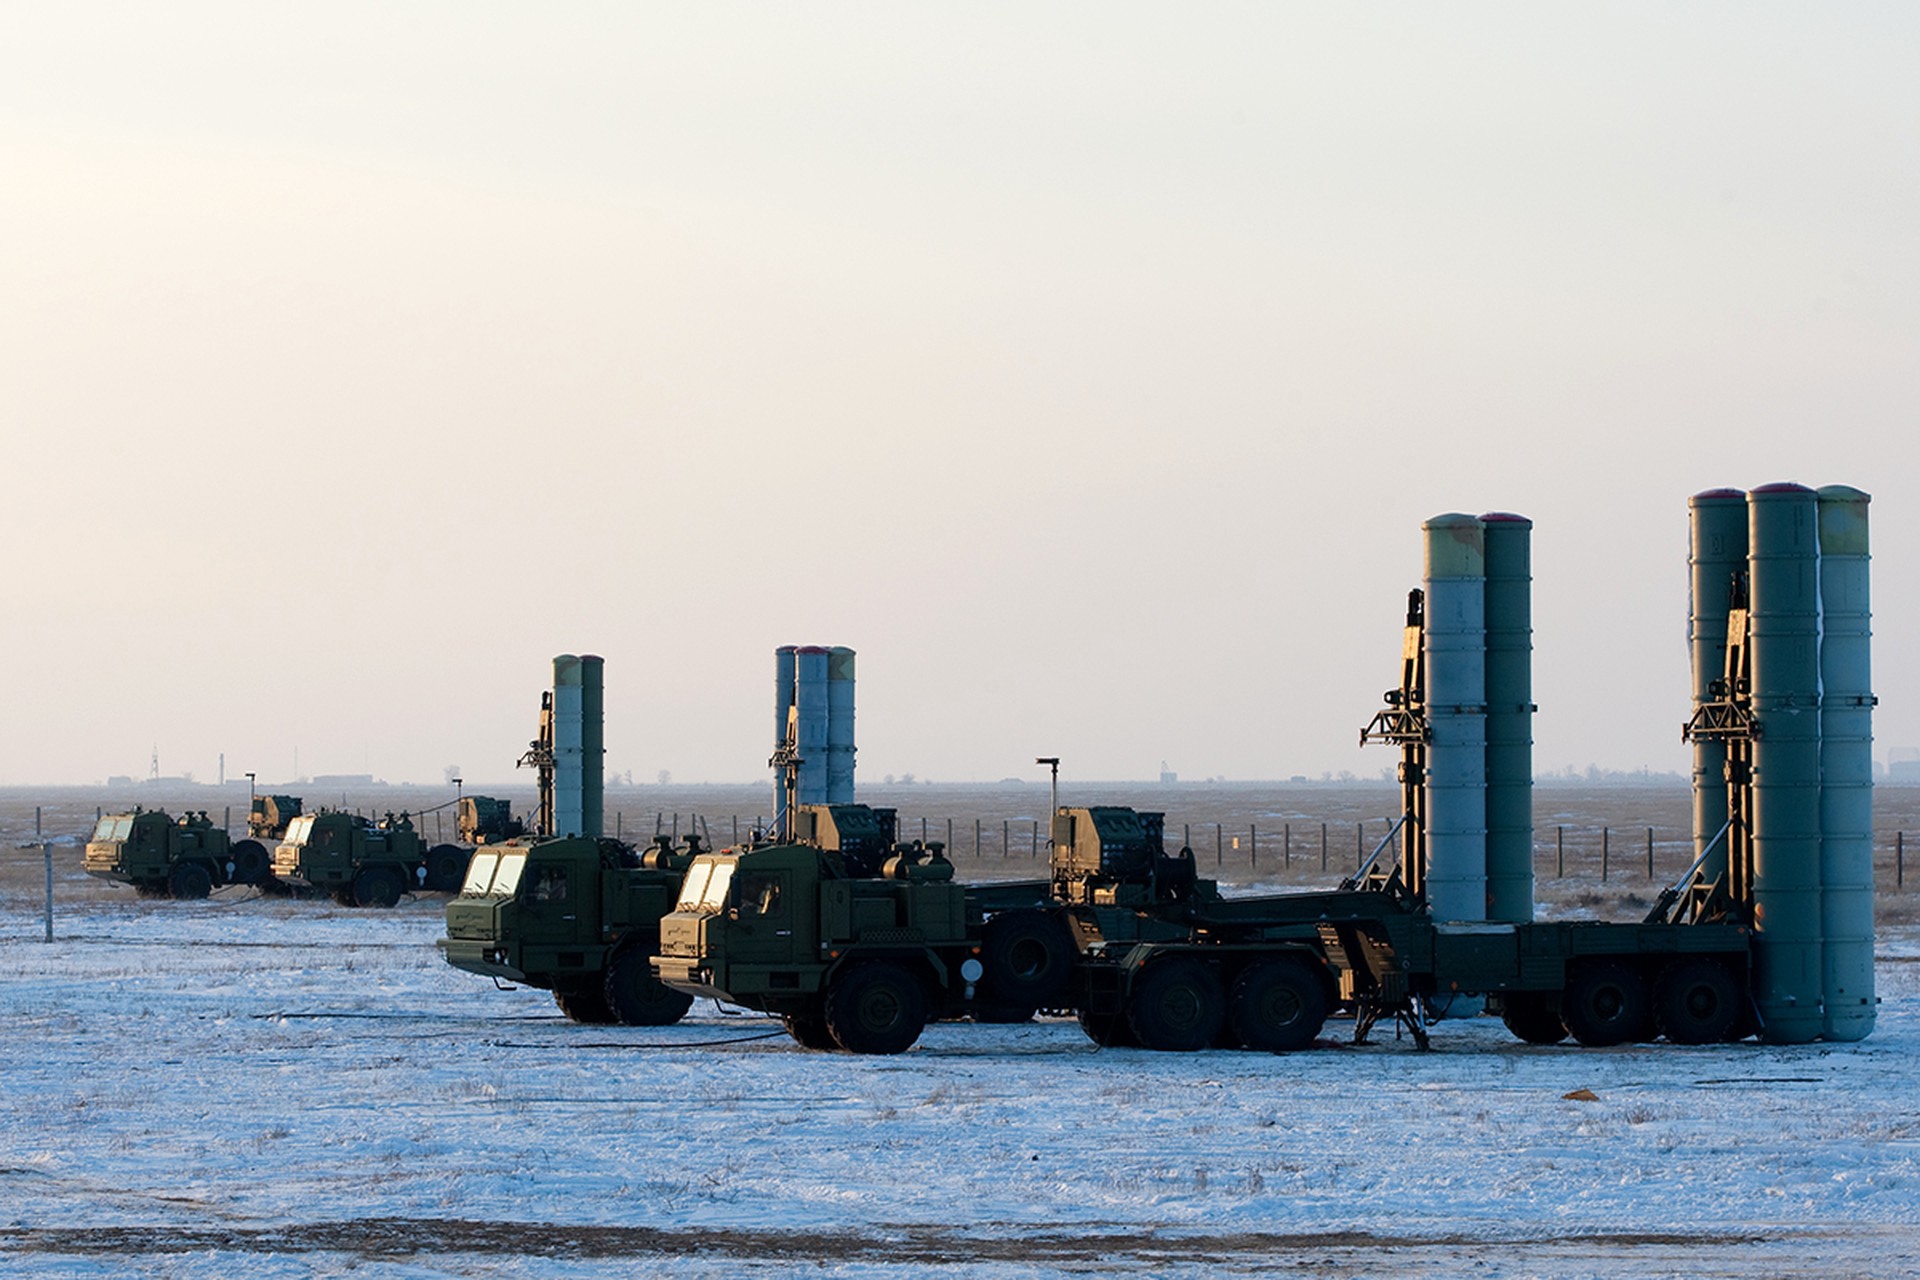 МО РФ: ПВО уничтожила украинскую ракету «Нептун» в Чёрном море 